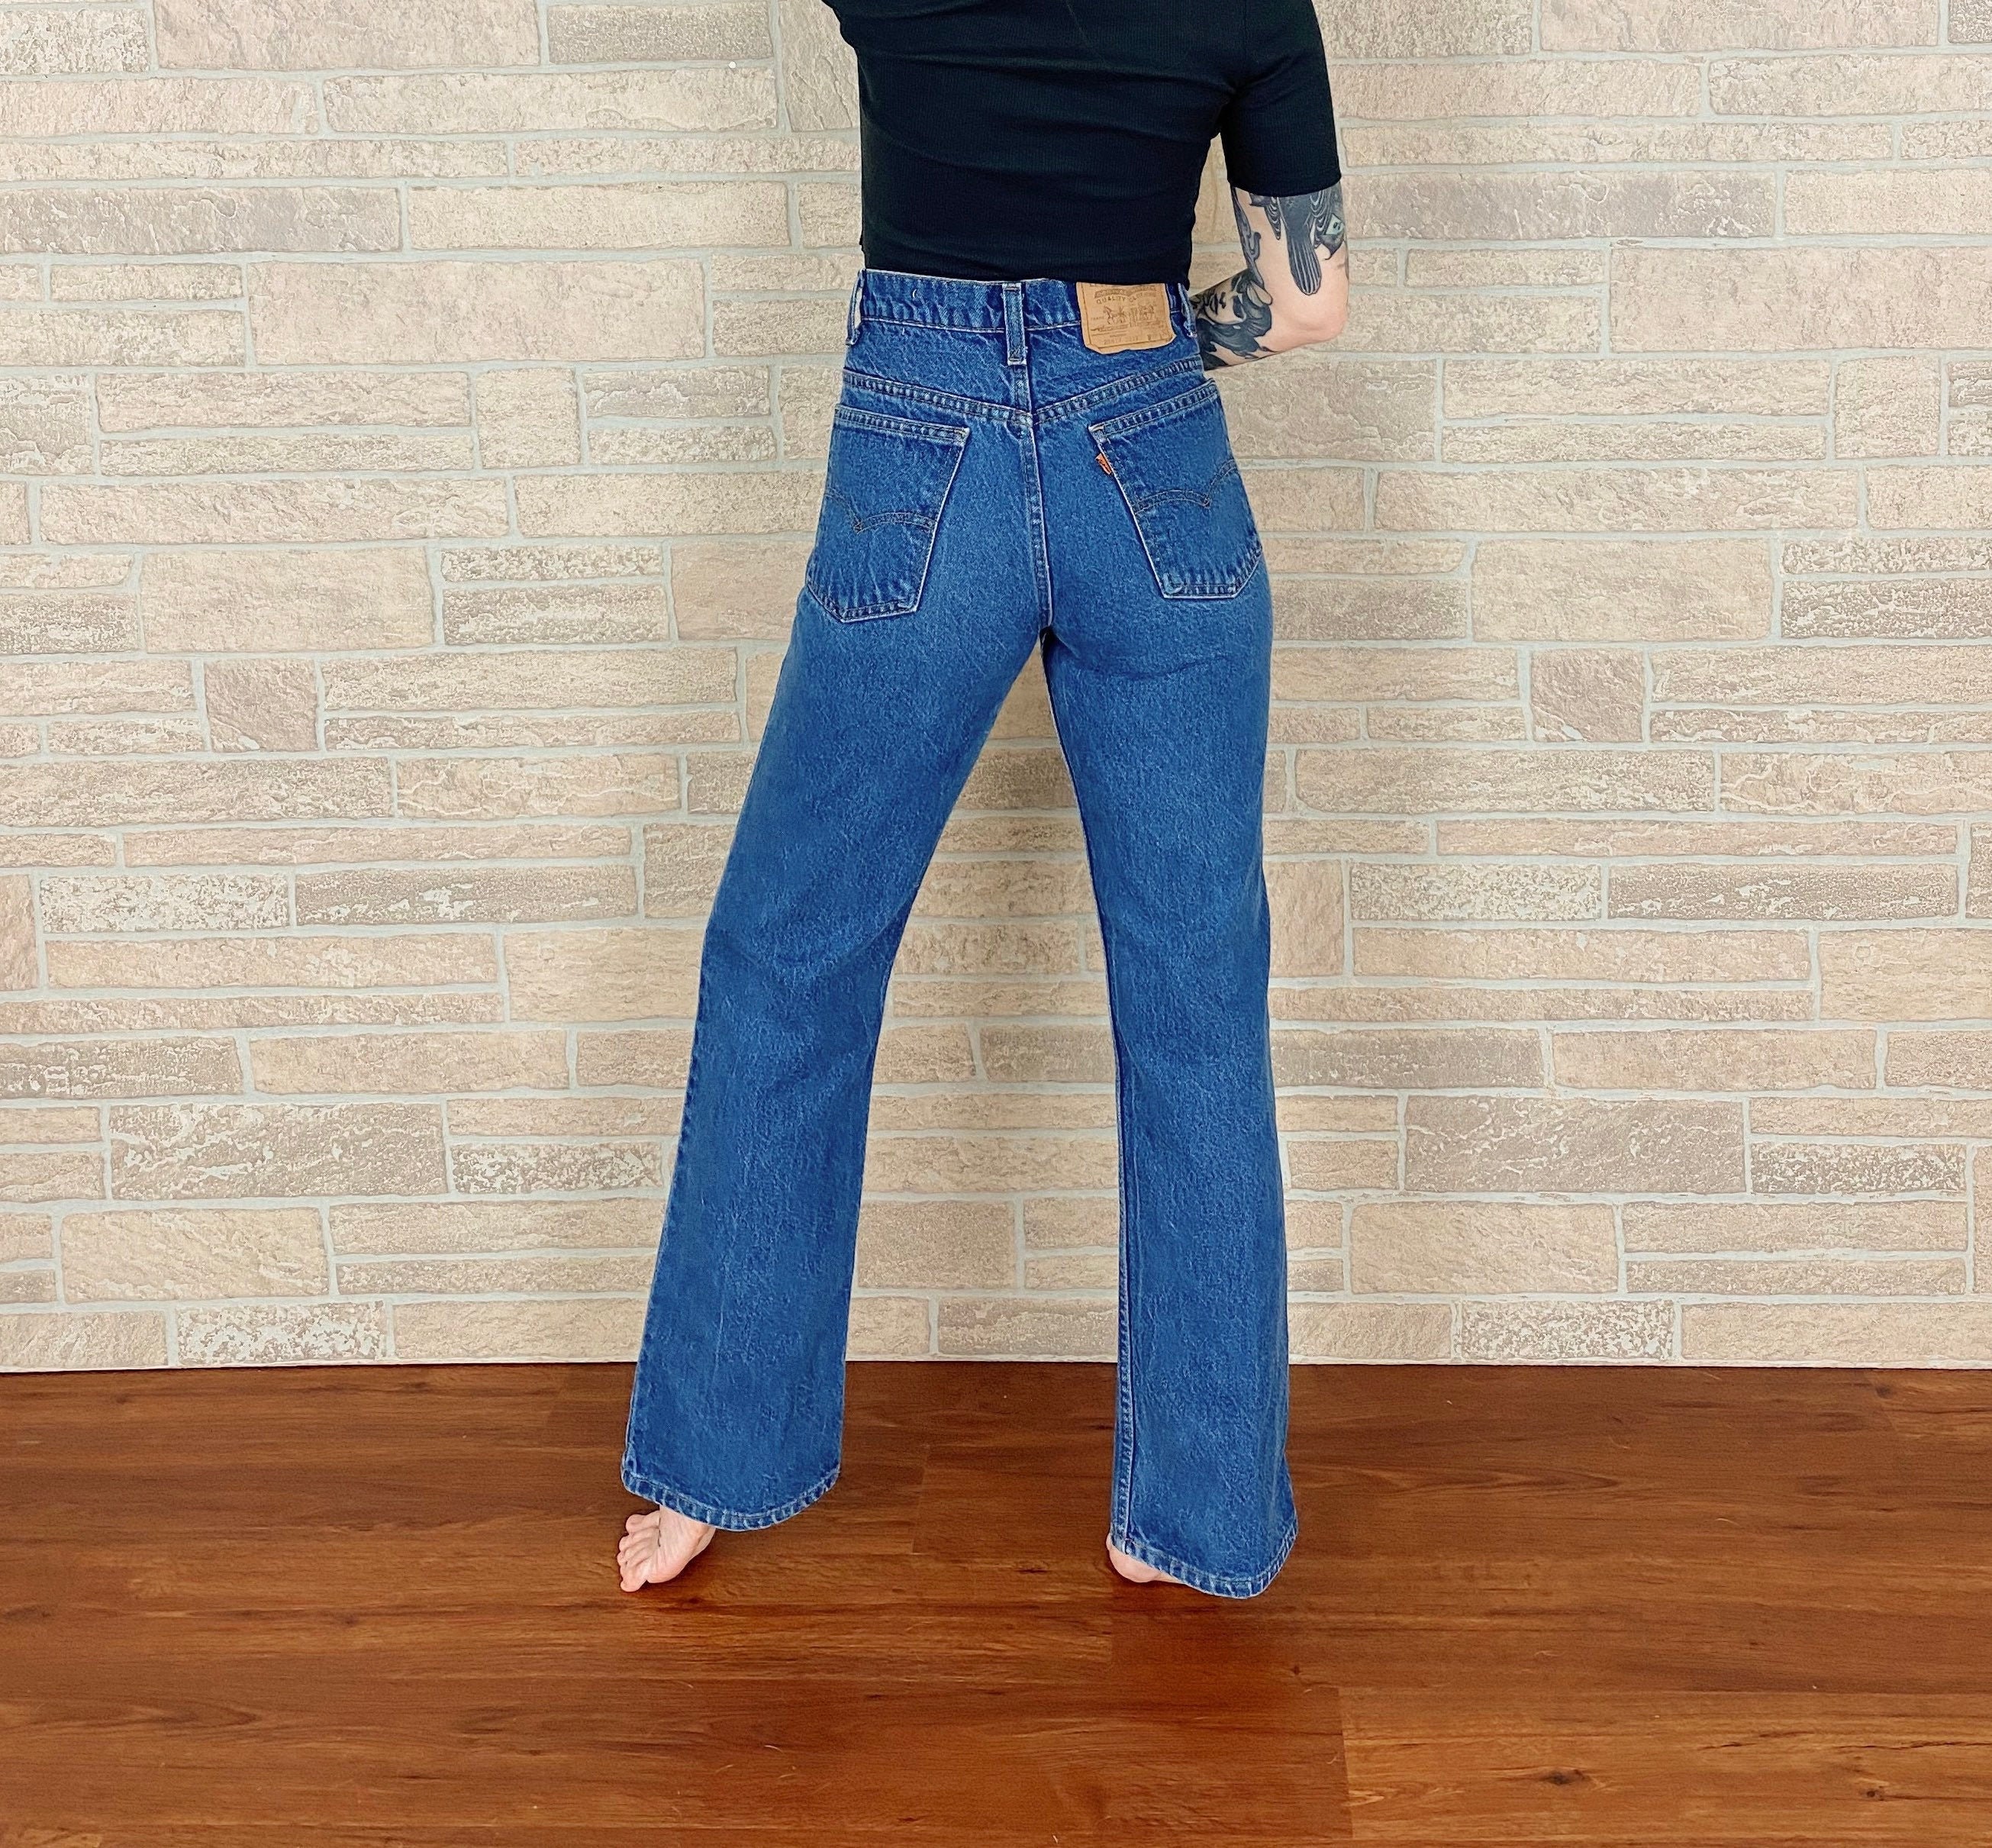 Levi's 517 Vintage Jeans / Size 28